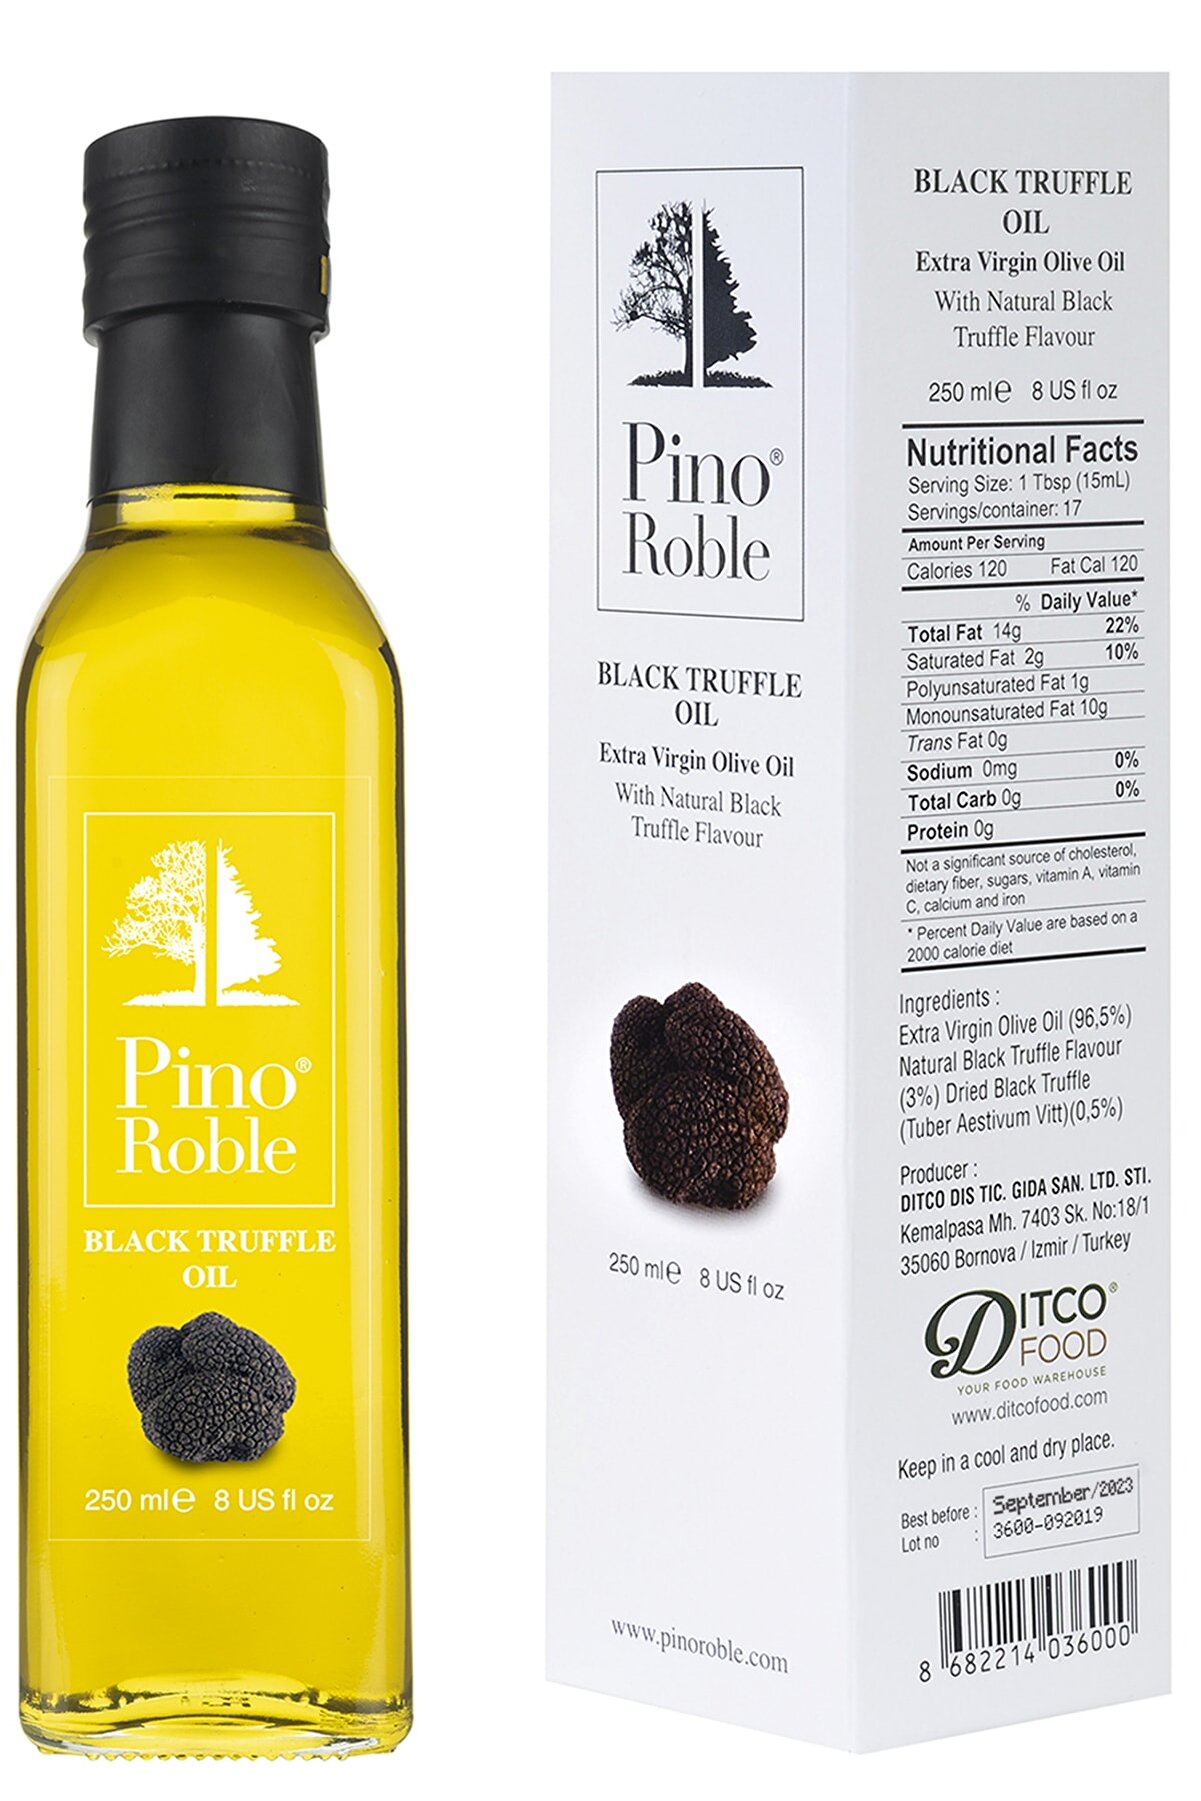 PinoRoble Black Truffle Siyah Trüf Mantarı Parçalı Ve Yağlı Soğuk Sıkım Gurme Zeytinyağı 250ml